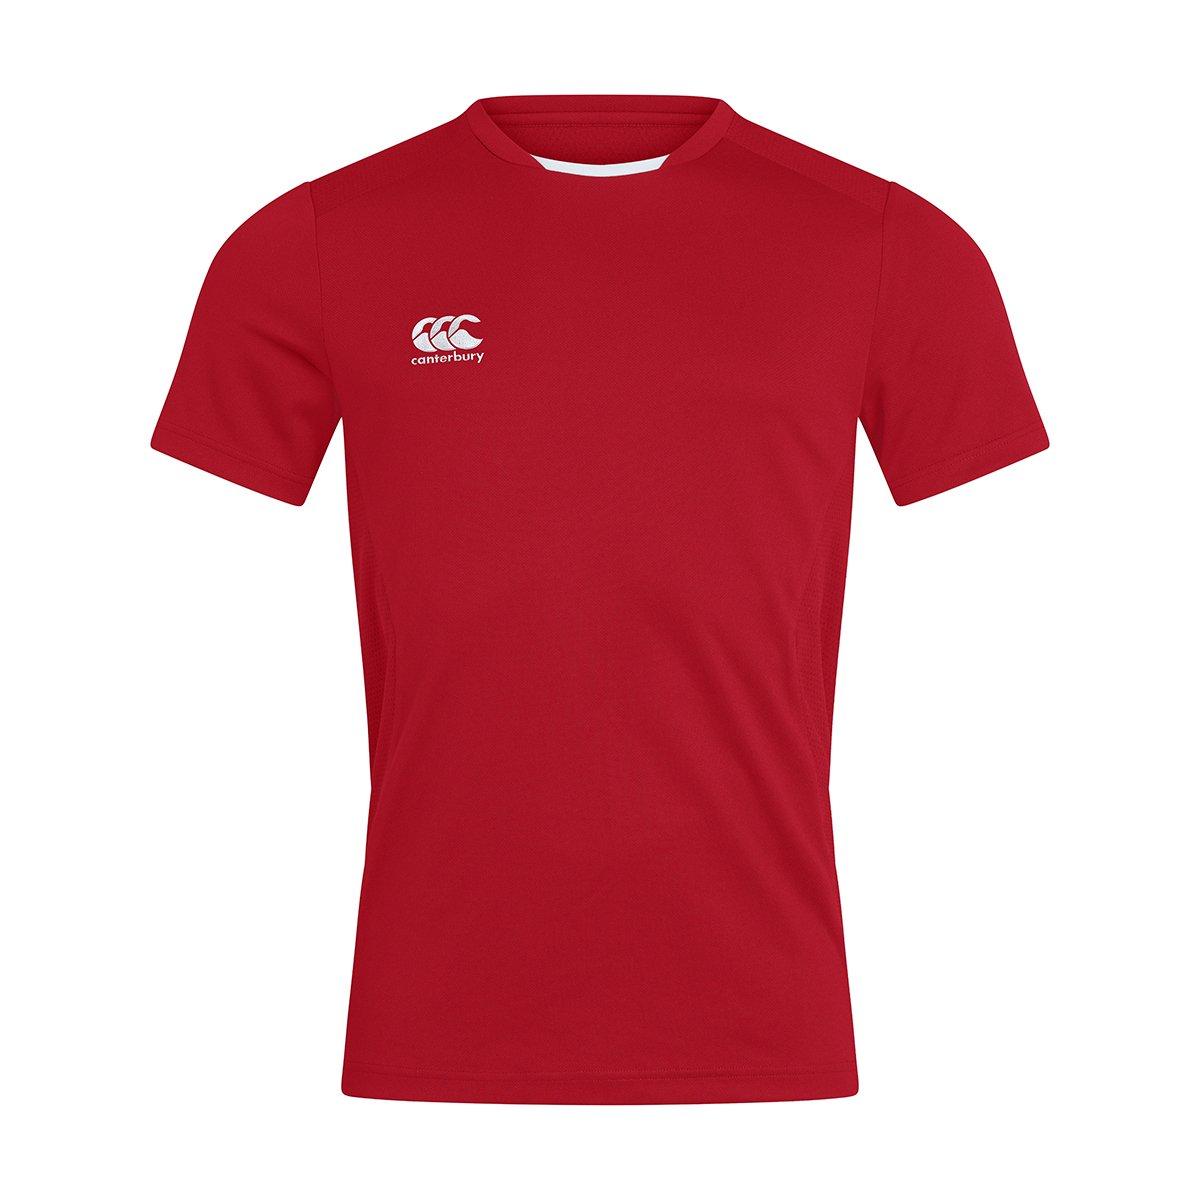 Club Dry Tshirt Herren Rot Bunt S von Canterbury